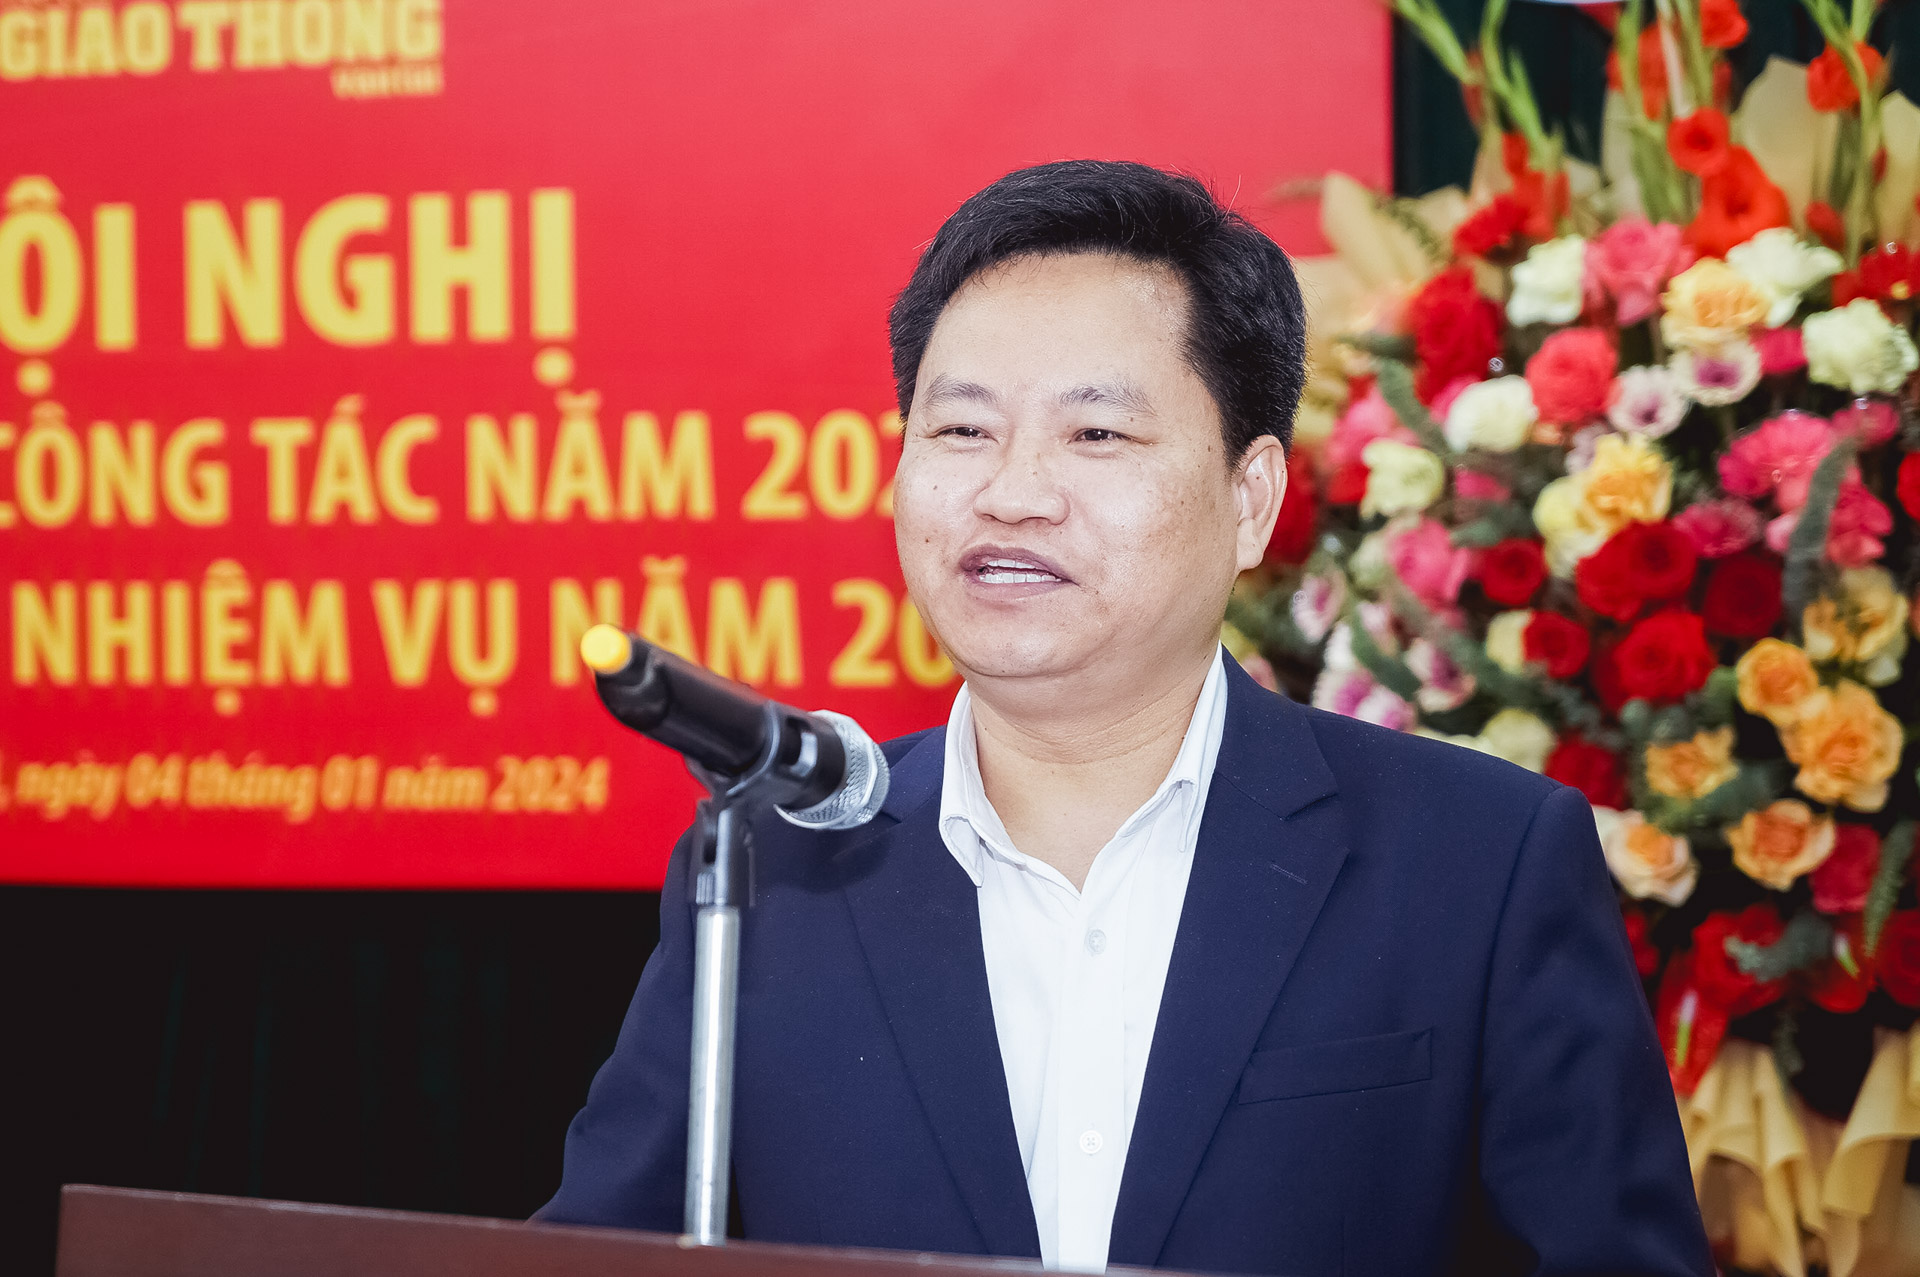 Thứ trưởng Nguyễn Danh Huy: "Tôi tin tưởng trên những gương mặt rạng ngời ở Tạp chí GTVT"- Ảnh 5.